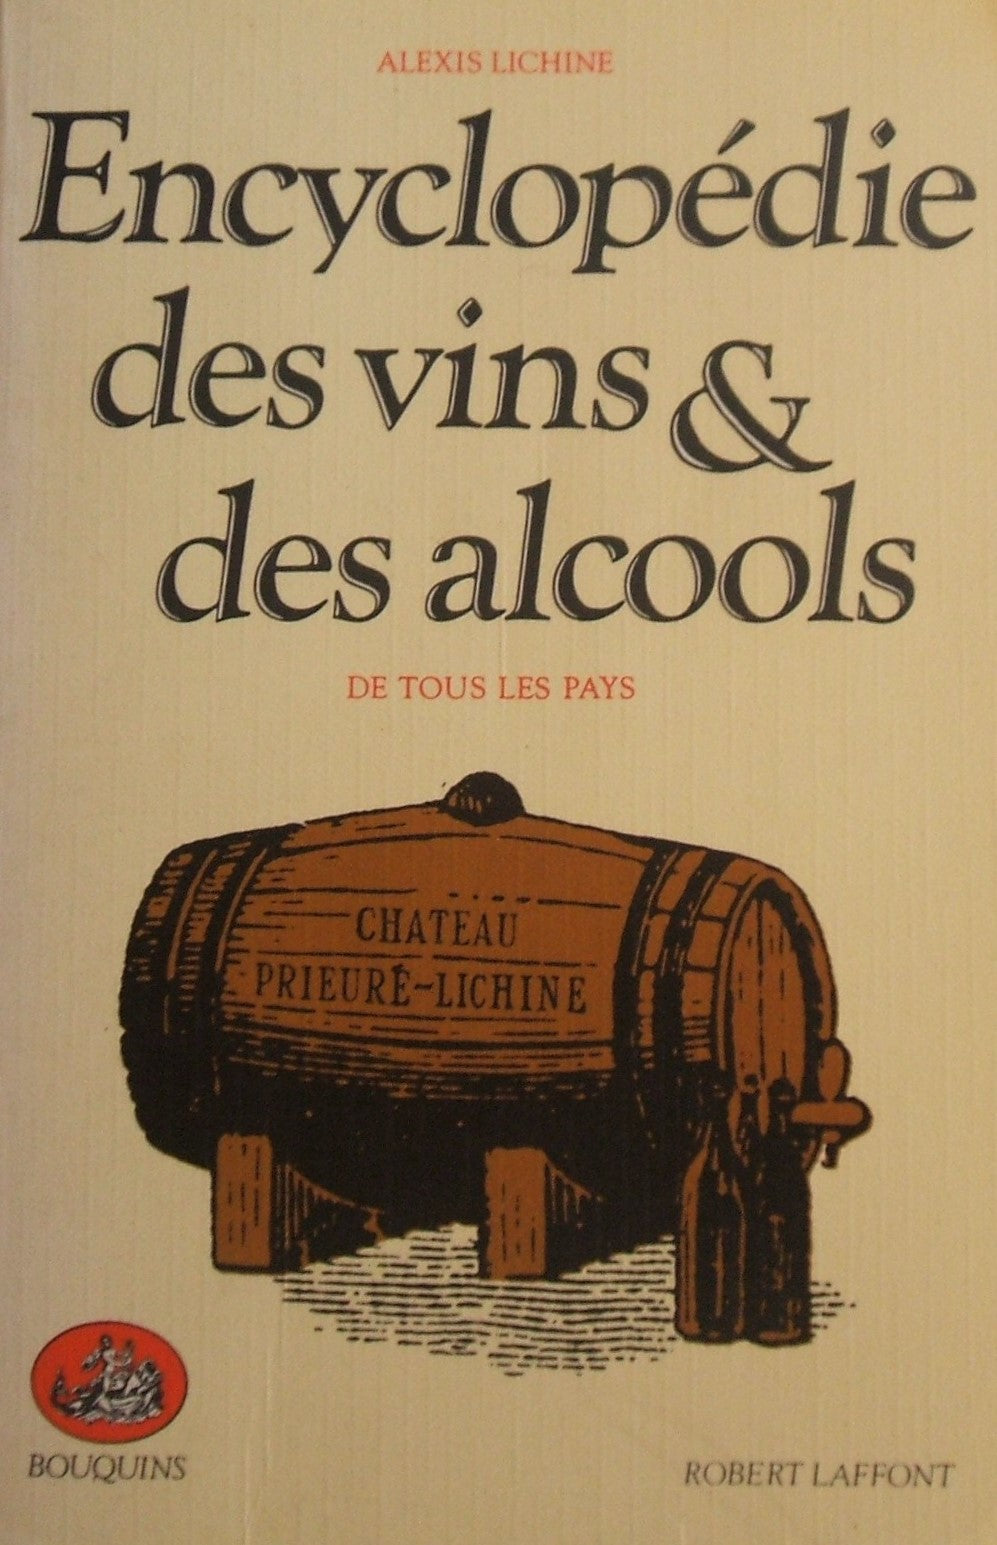 Livre ISBN 2221501950 Encyclopédie des vins et alcools de tous les pays (Alexis Lichine)